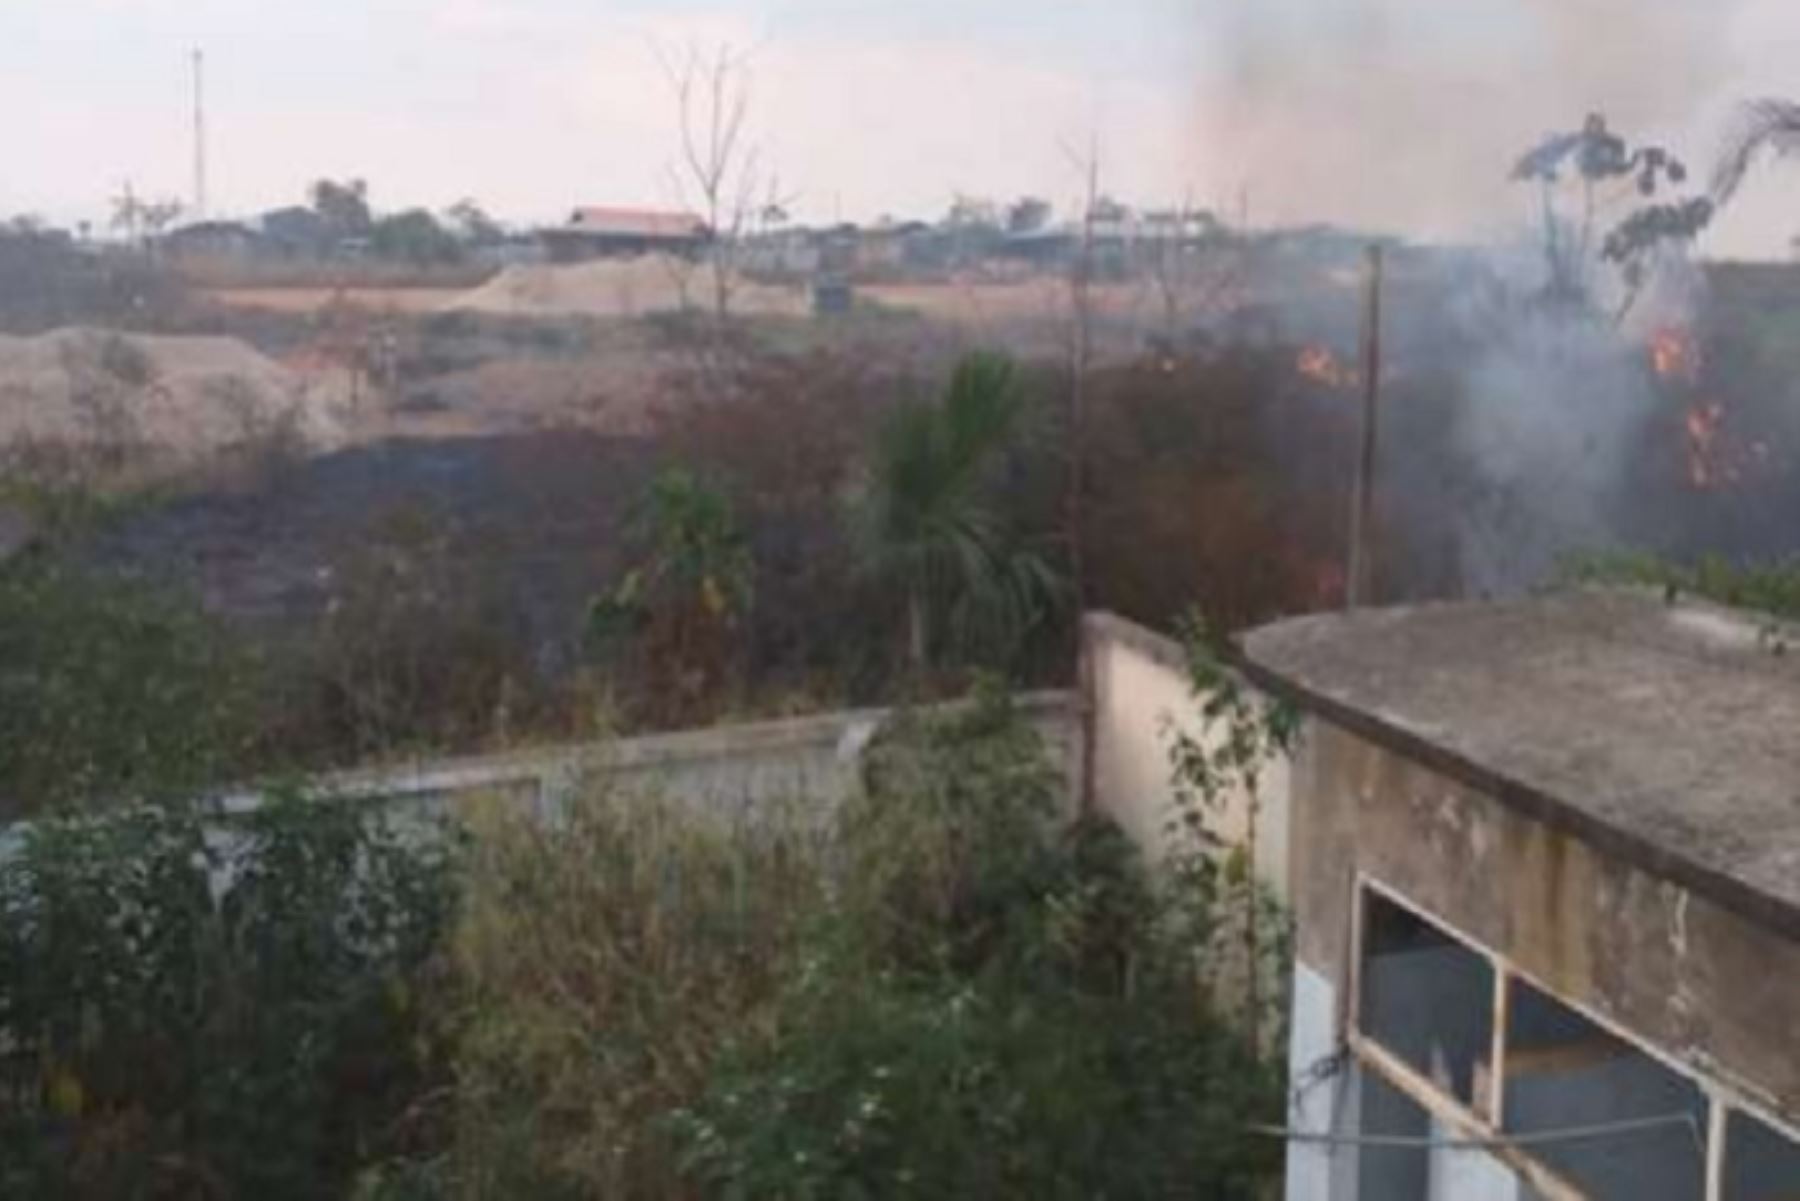 El incendio forestal que se registró en el centro poblado Iberia del distrito del mismo nombre, en la provincia de Tahuamanu, región Madre de Dios, dañó dos hectáreas de cobertura natural, informó el Instituto Nacional de Defensa Civil (Indeci).